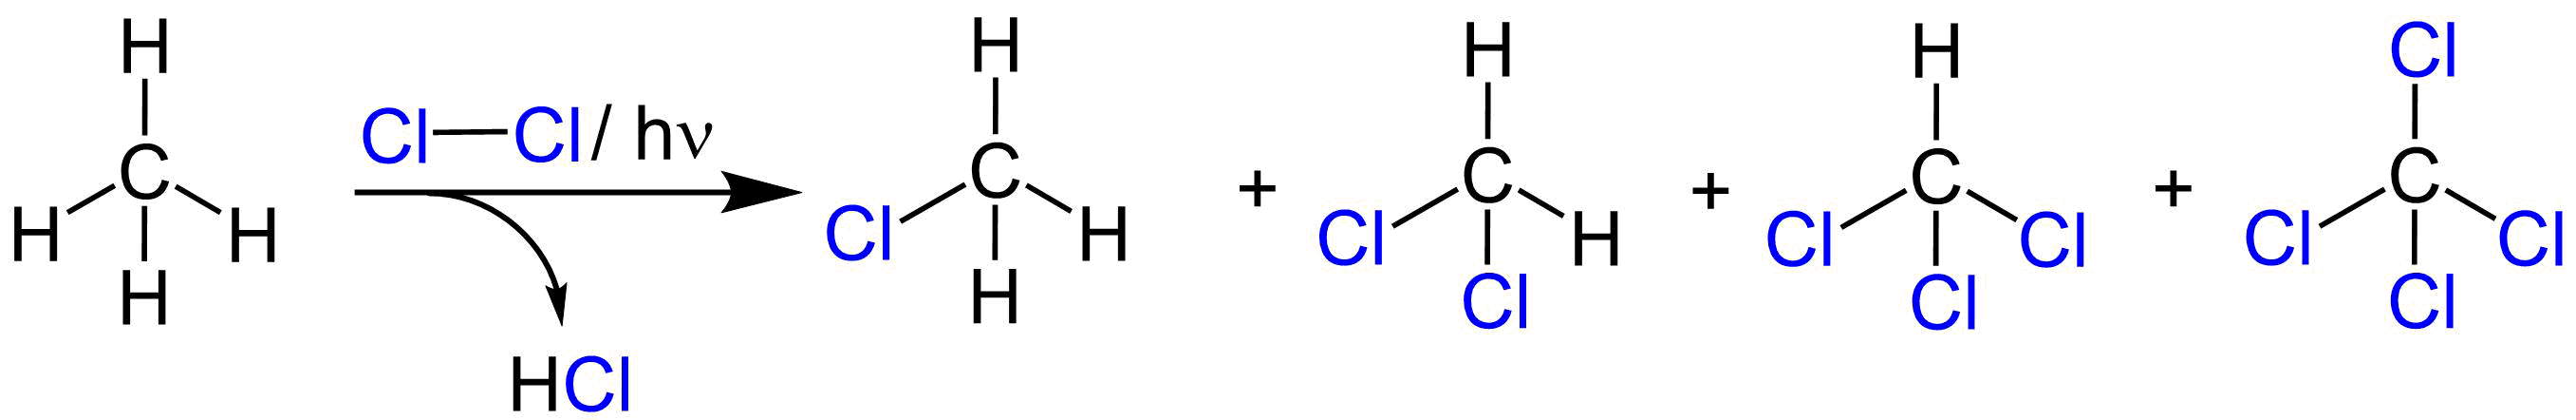 Продукт хлорирования метана. Метан четыреххлористый углерод. Хлорирование трихлорметана. Дихлорметан в метан. Структурная формула дихлорметана.